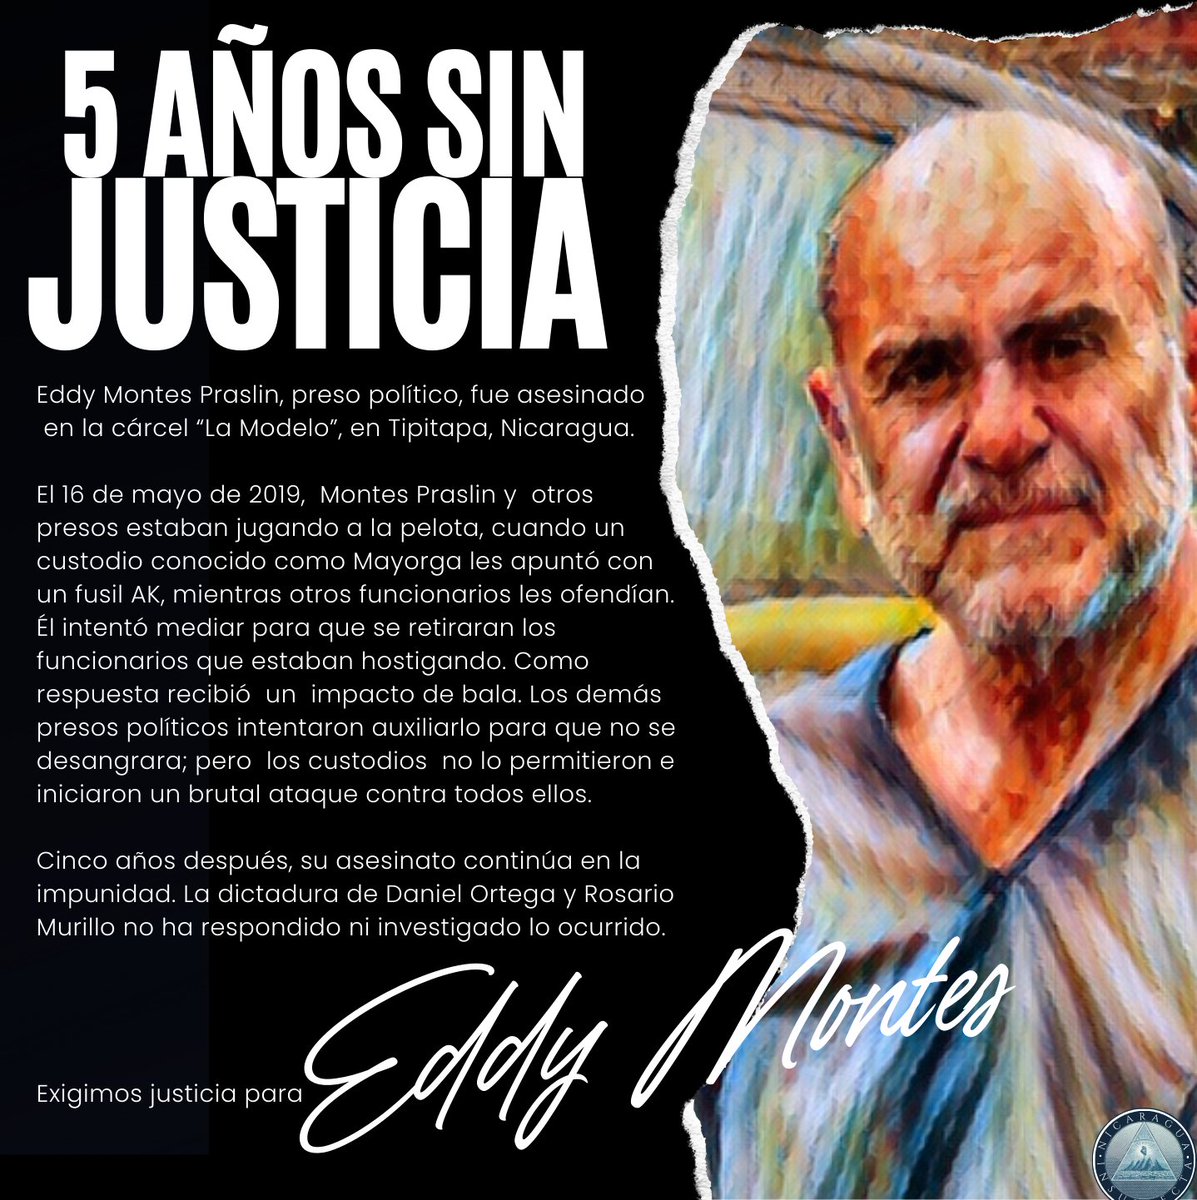 Justicia para Eddy Montes Praslin y para todas las víctimas de la dictadura Ortega Murillo.

#SOSNicaragua
#LibertadYa
#PresosPolíticos